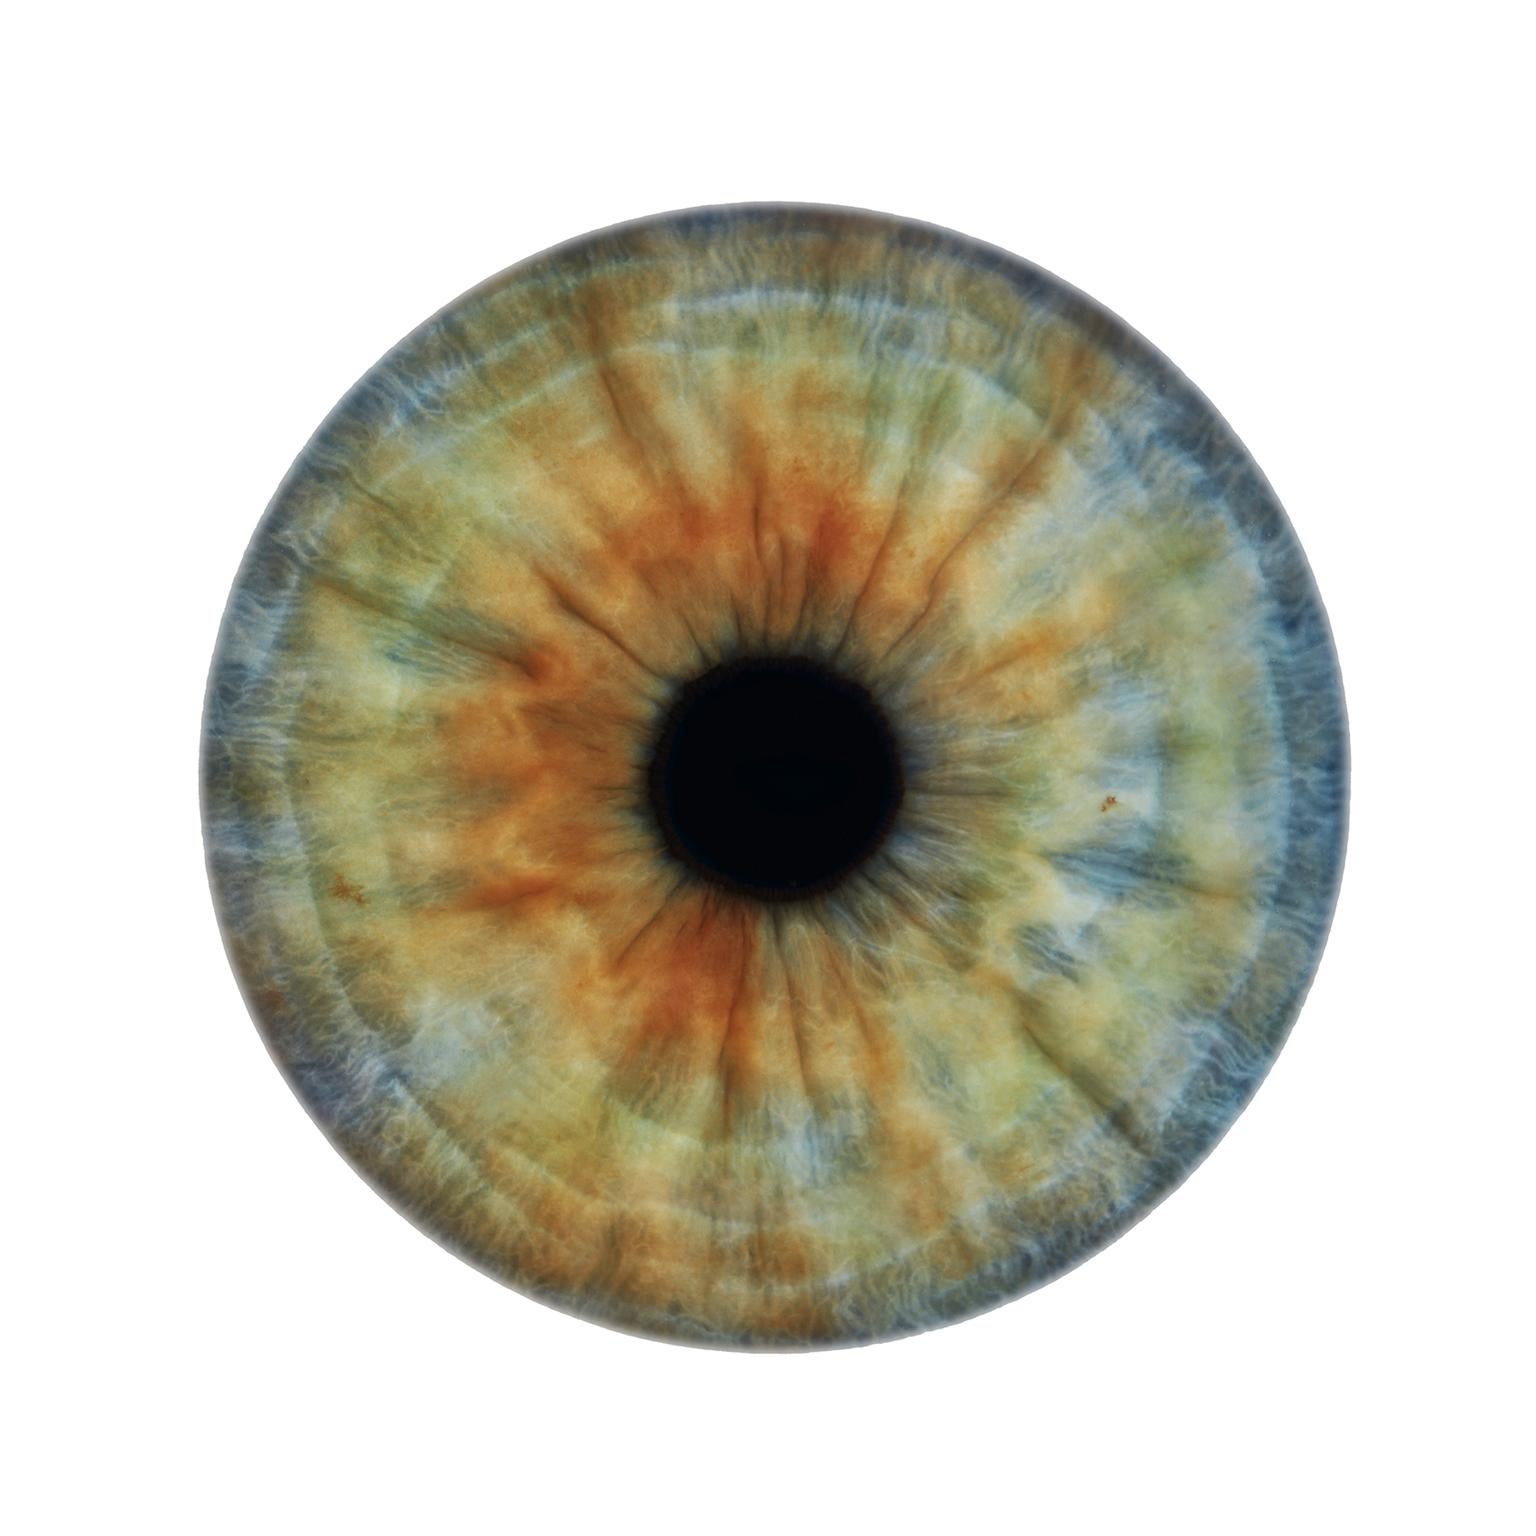 Frank Schott Abstract Print – IRIS IV  - einzigartige Abstraktion der Farben in rundem Glasrahmen (45 Zoll Durchmesser)